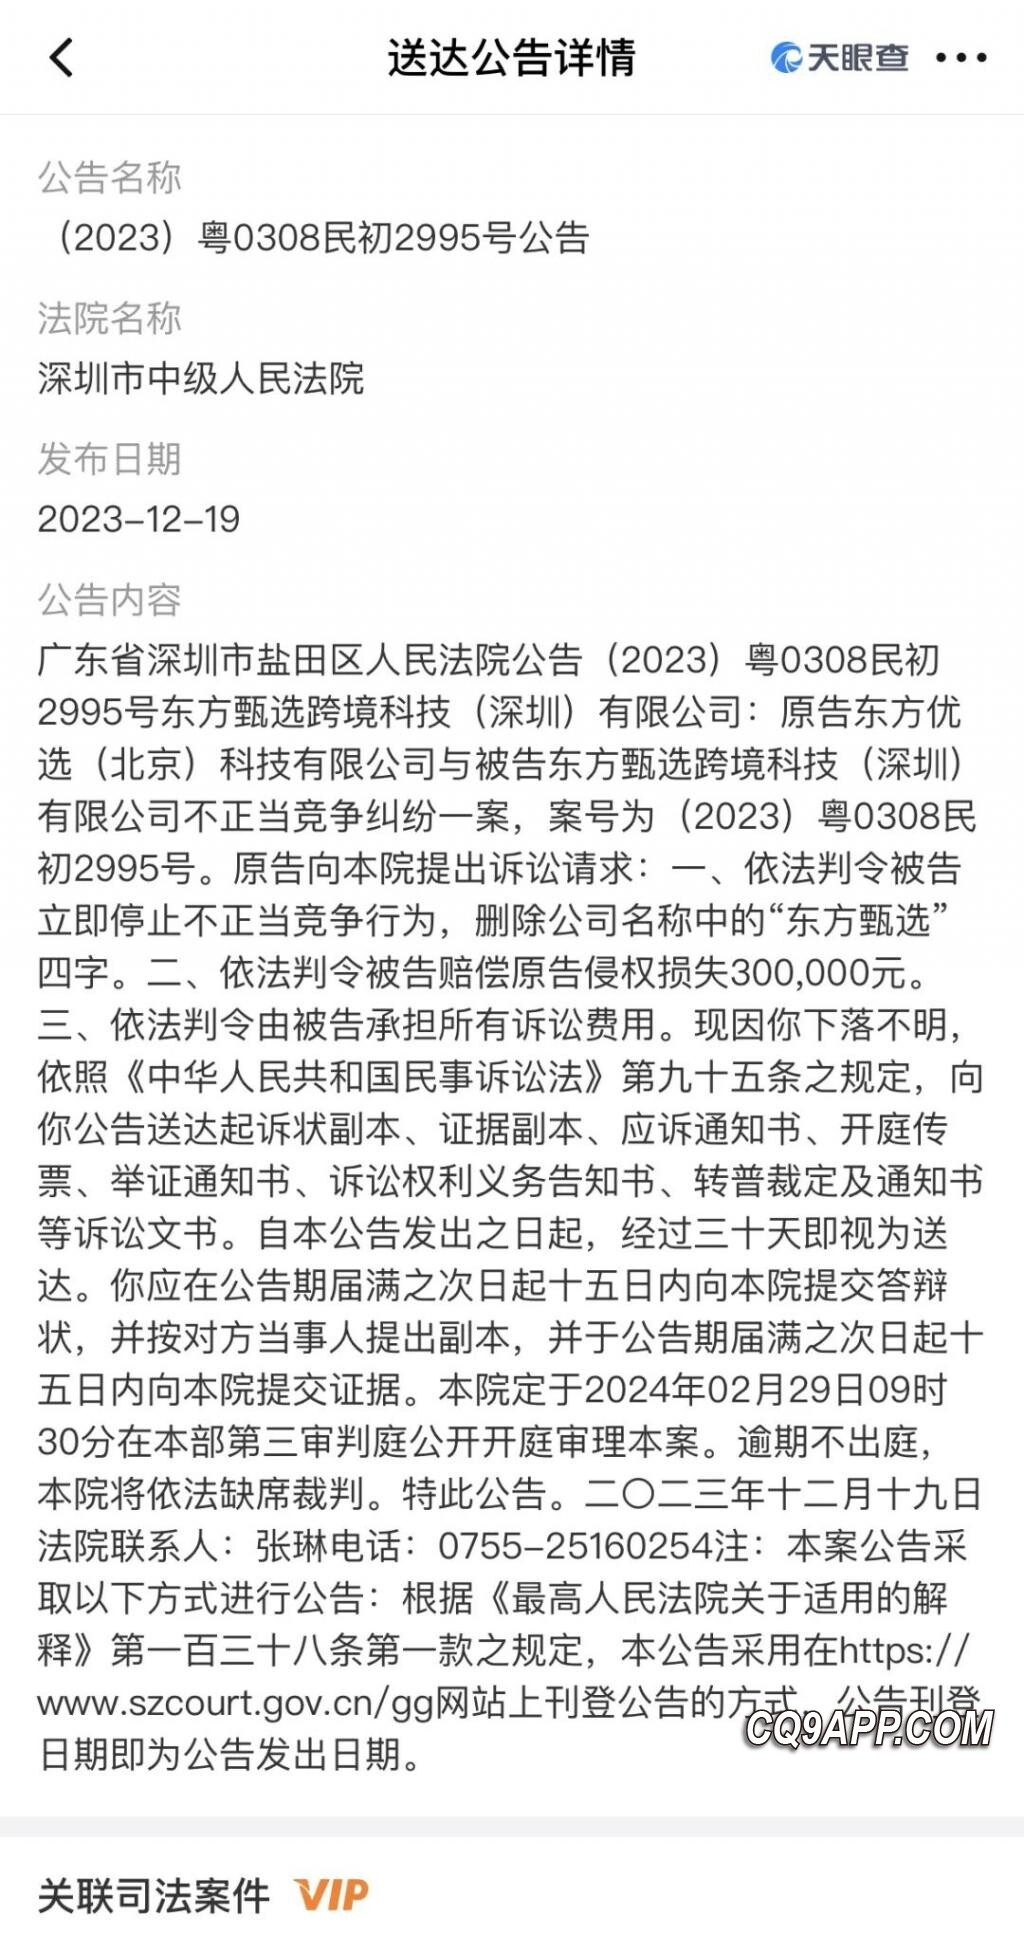 2023122714 新东方起诉同名科技公司，要求停用名称并索赔30万元